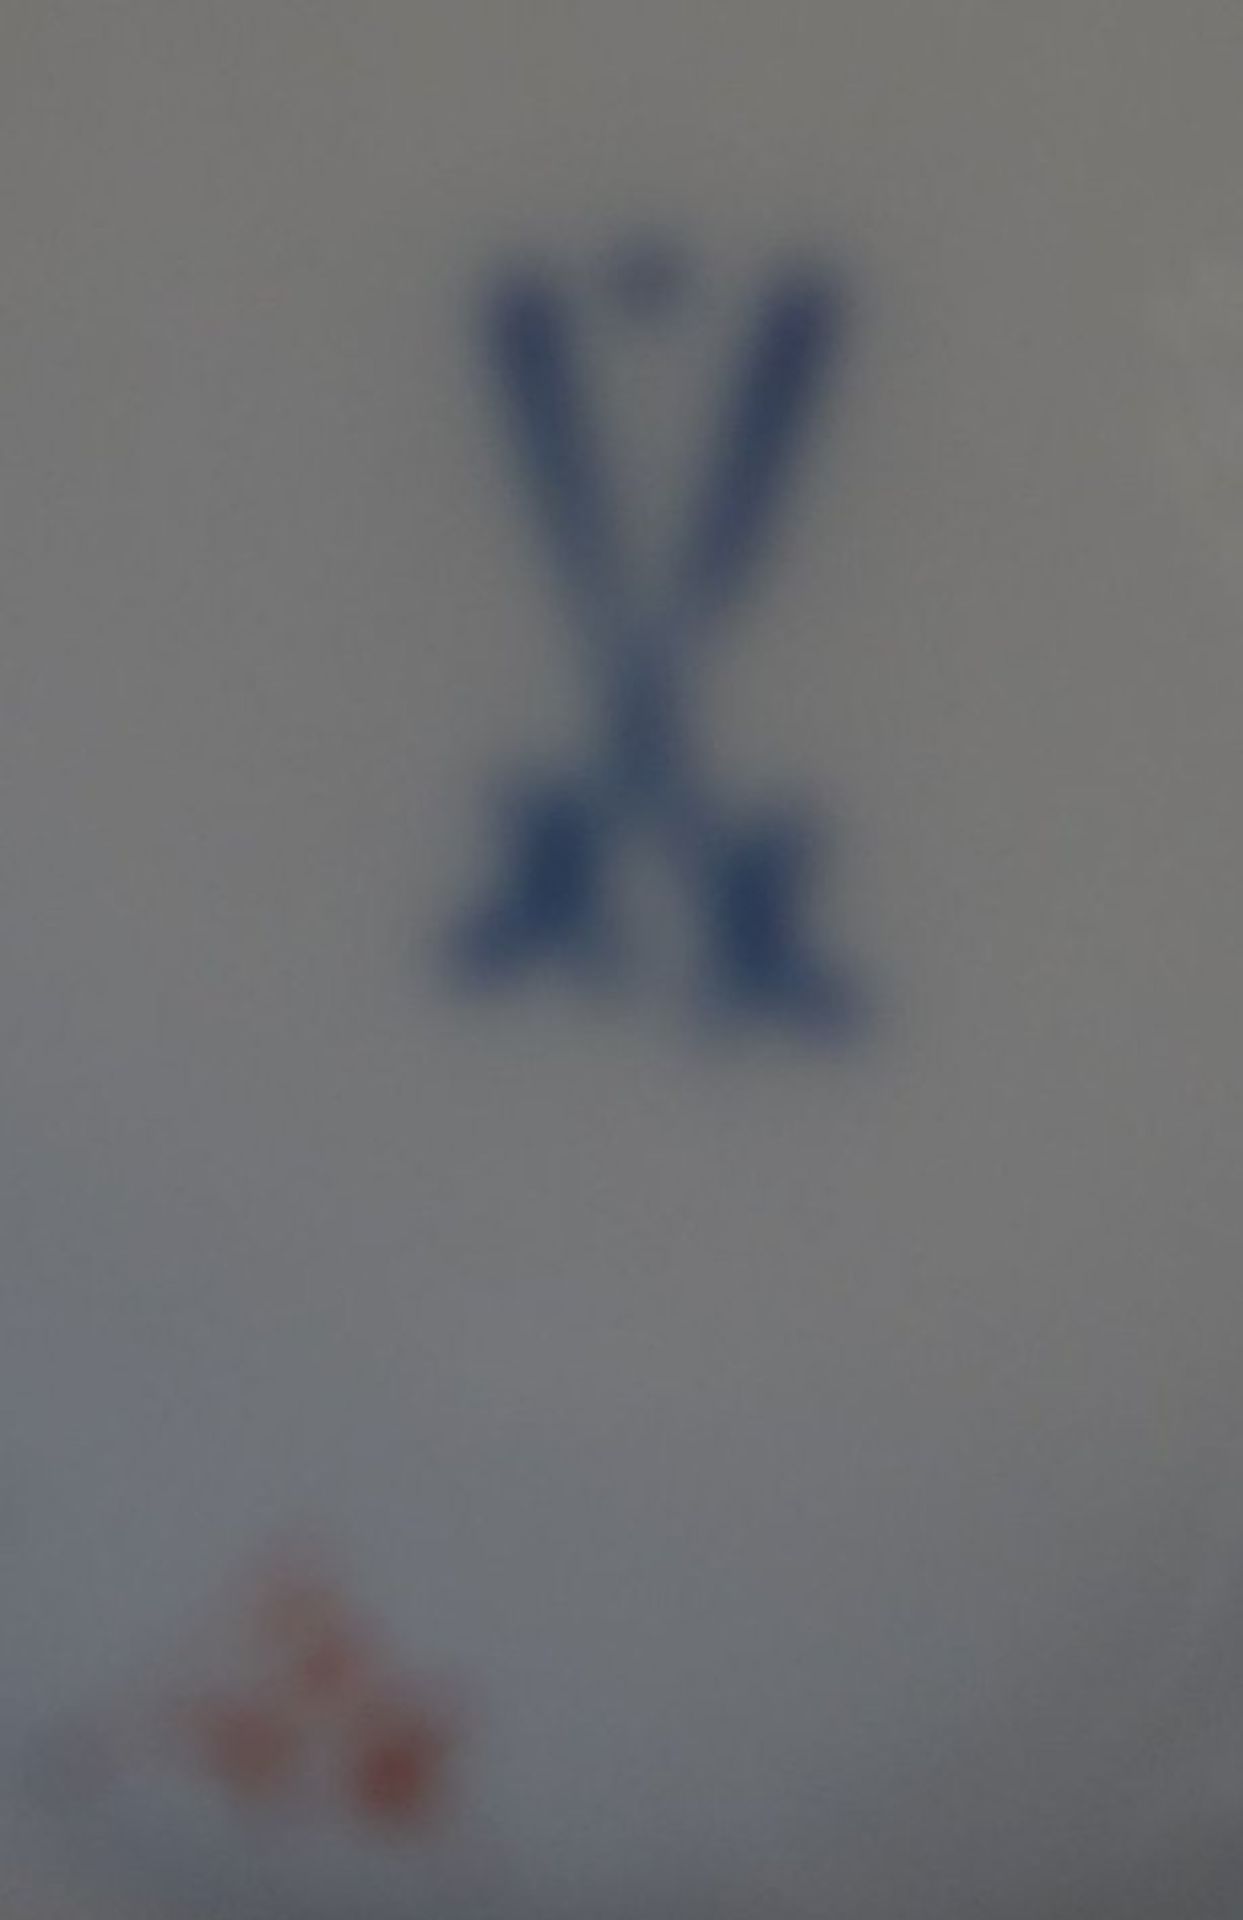 gr. Sahnekännchen "Meissen" Streublume, 1.Wahl, Schwerter mit Punkt, H-13,5 c - Bild 4 aus 4